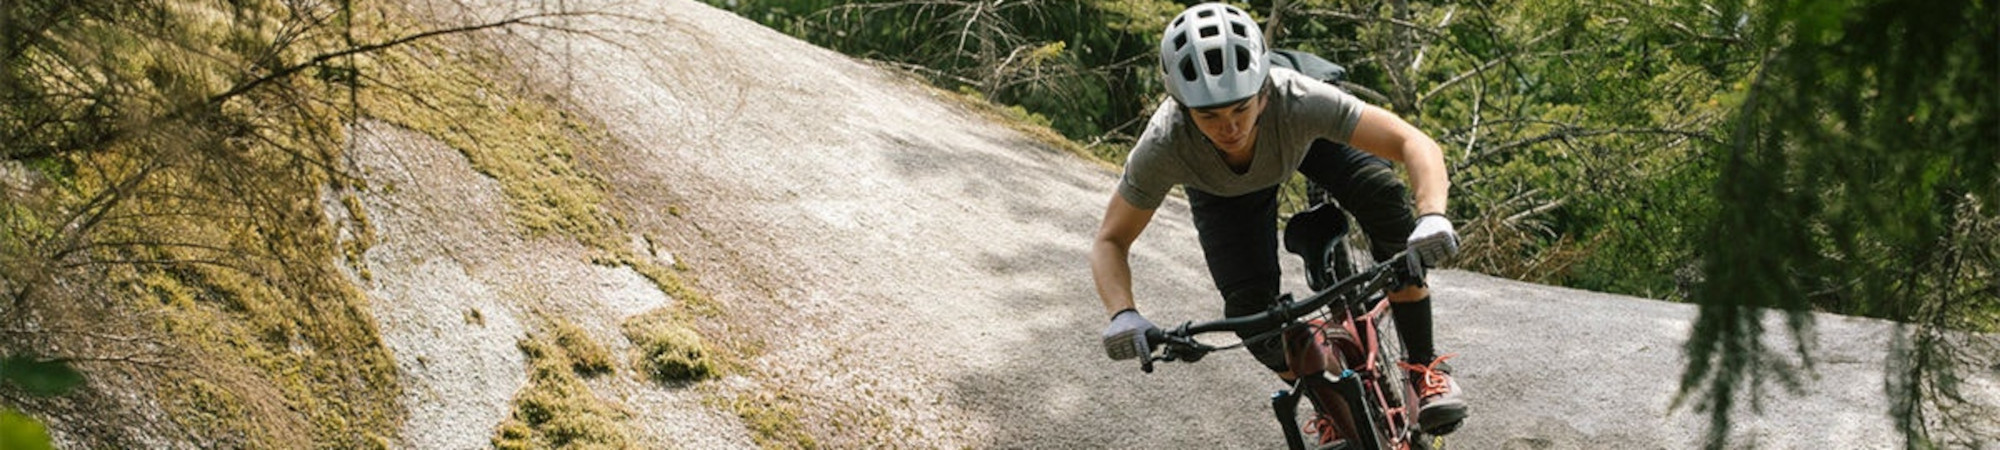 提升您的山地自行车骑行技能